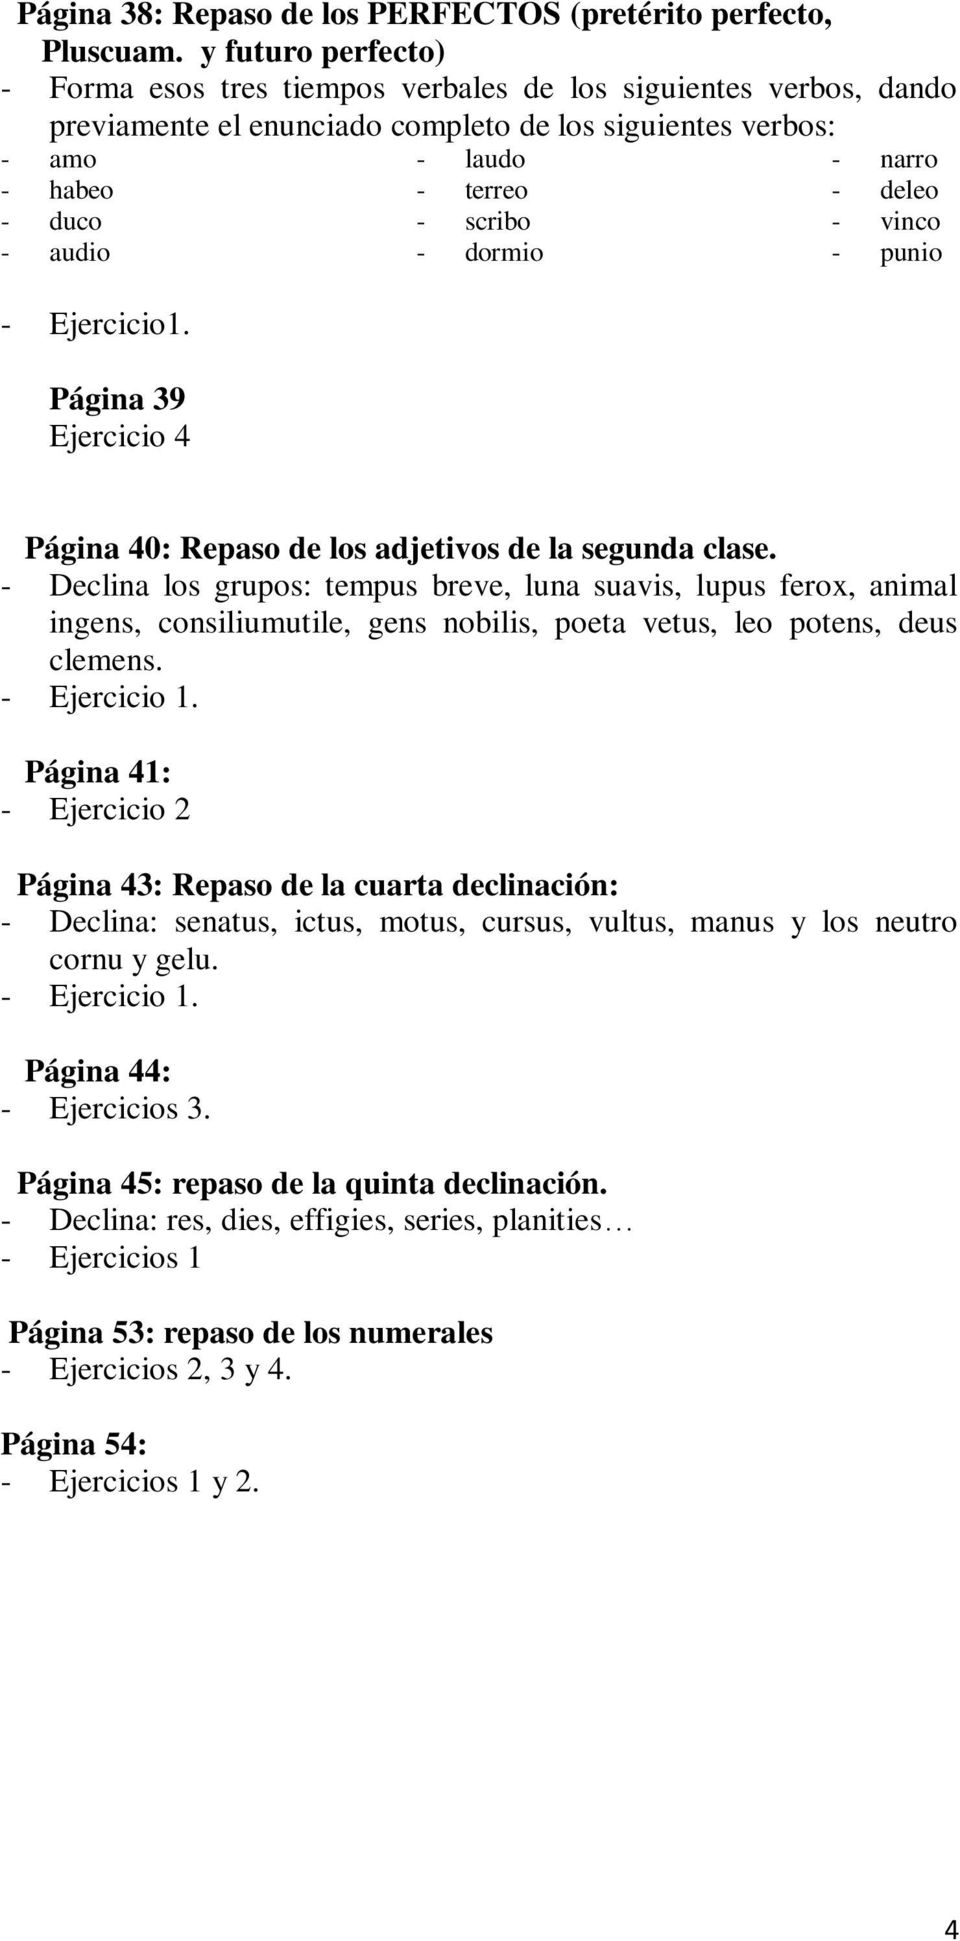 Página 39 Ejercicio 4 - laudo - terreo - scribo - dormio - narro - deleo - vinco - punio Página 40: Repaso de los adjetivos de la segunda clase.